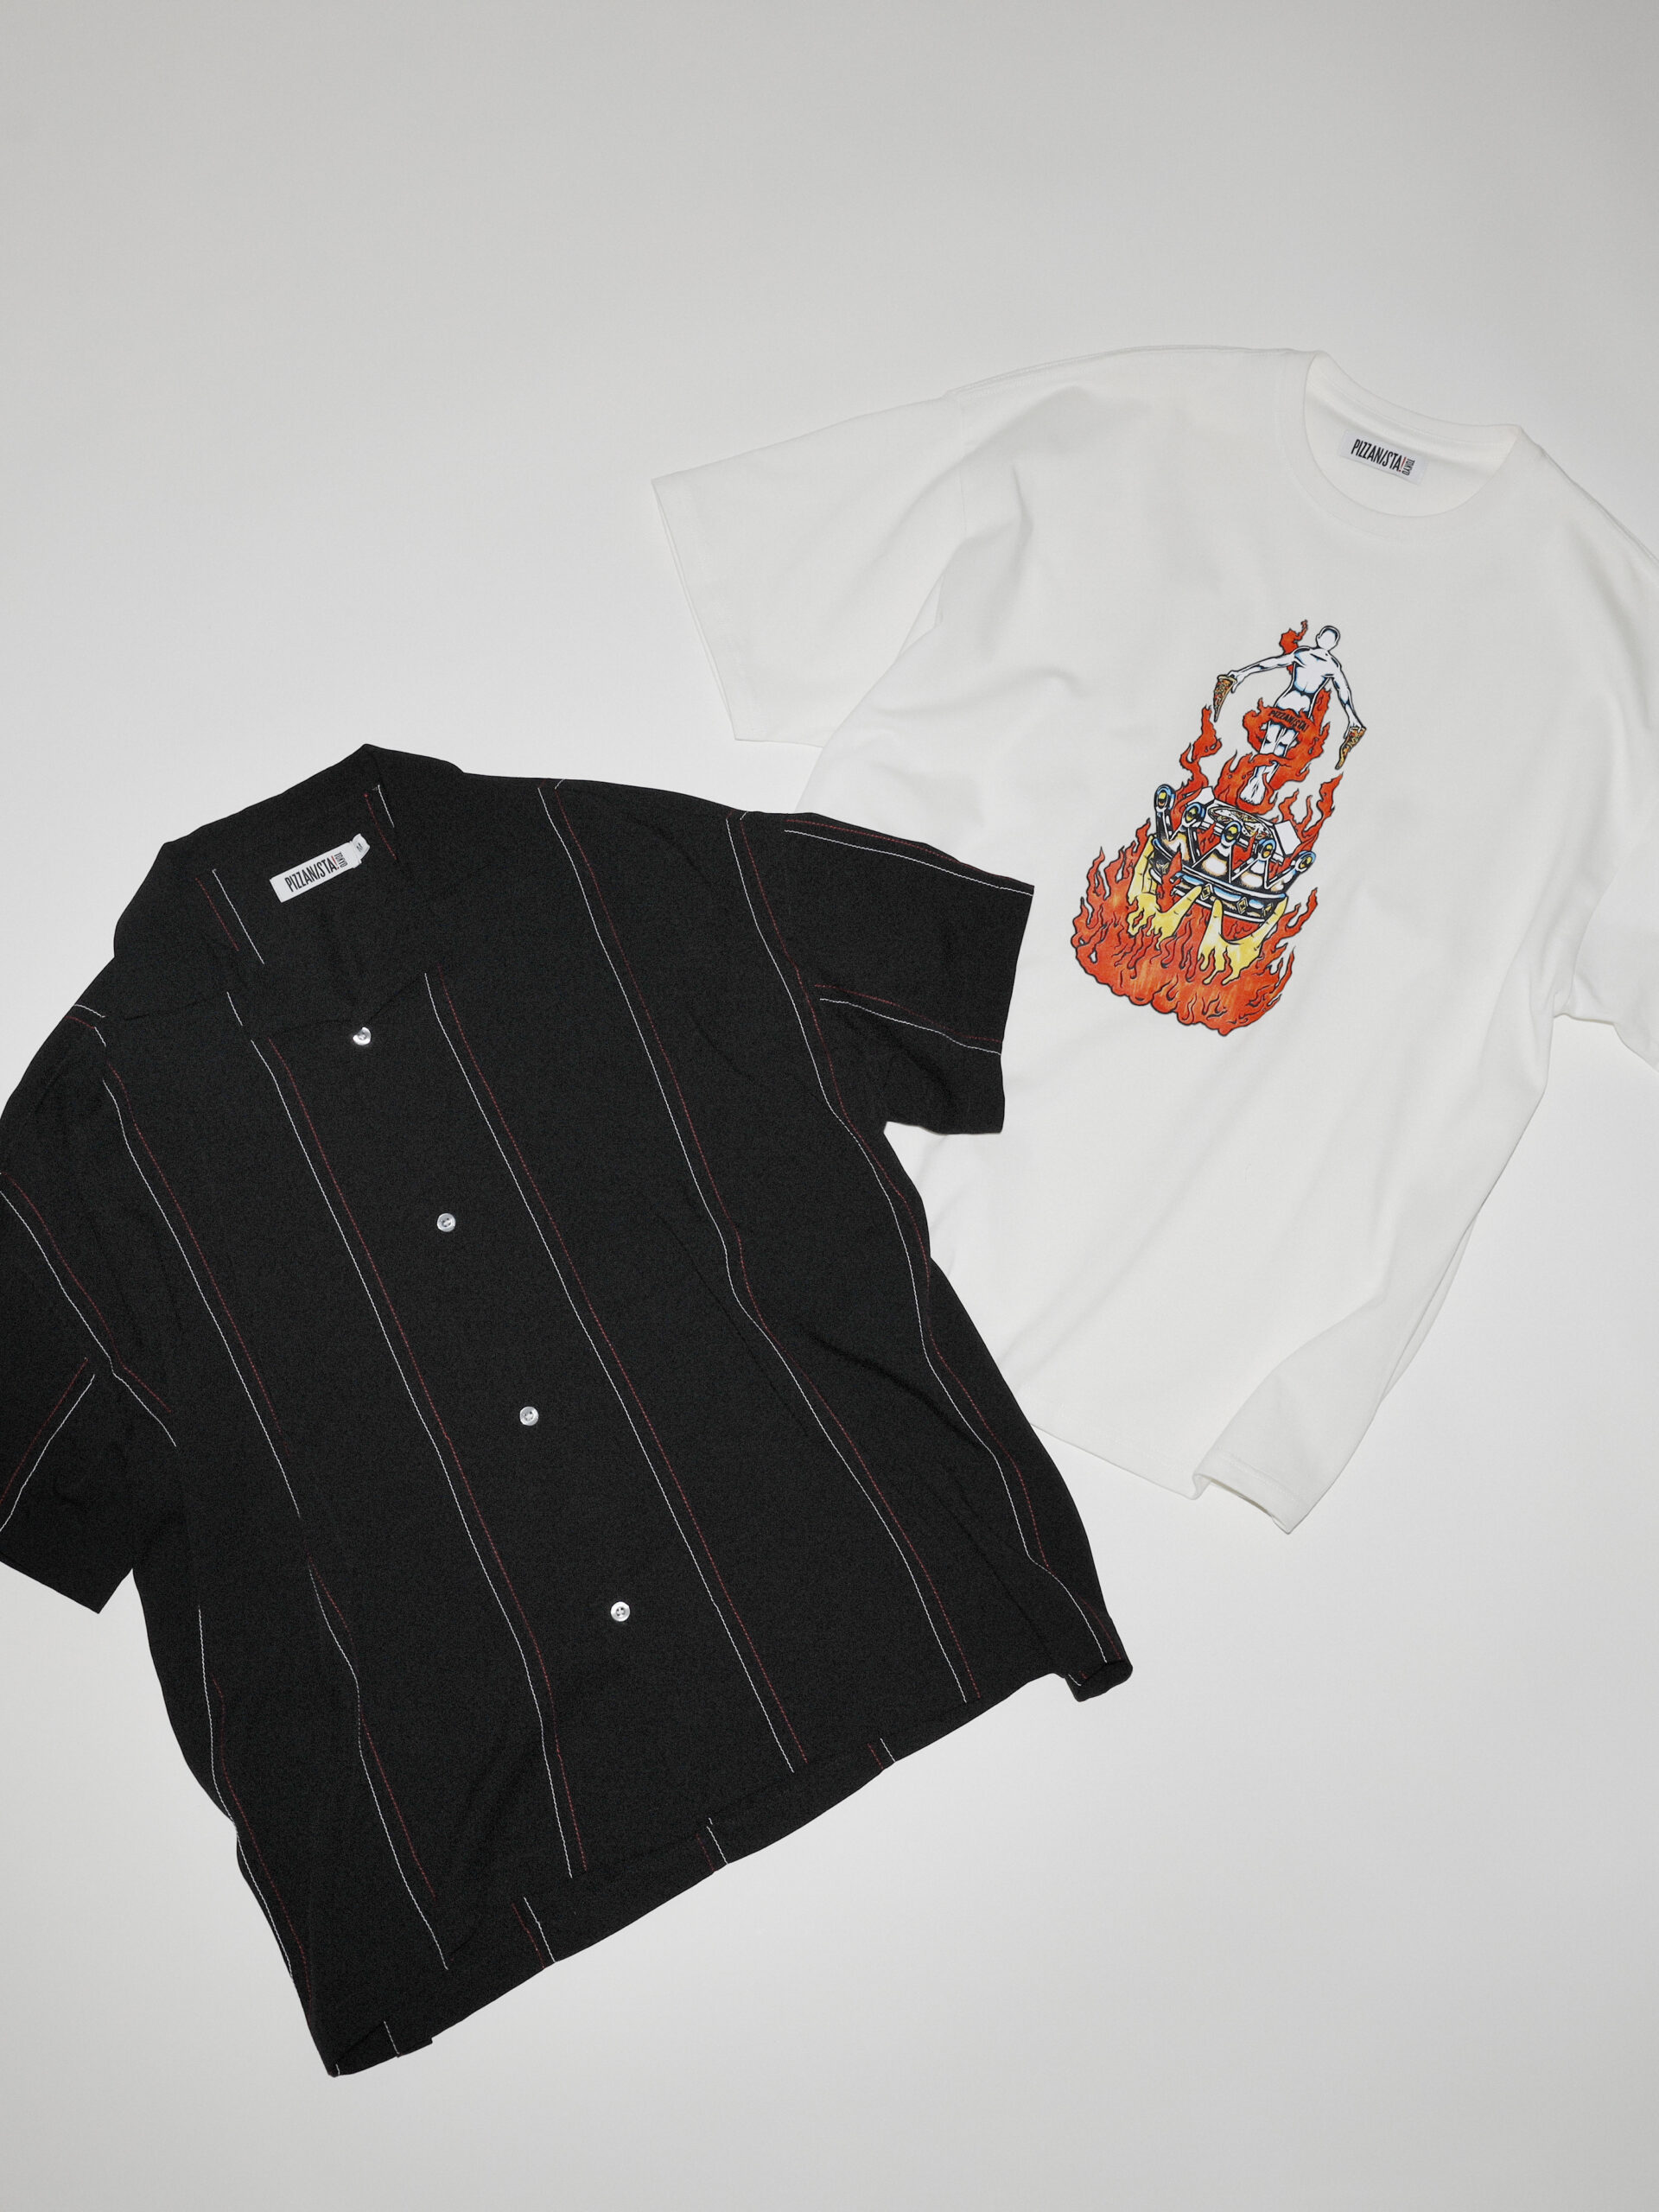 「ピザニスタ! トウキョウ」の開襟シャツ ¥15,400、Tシャツ ¥7,150